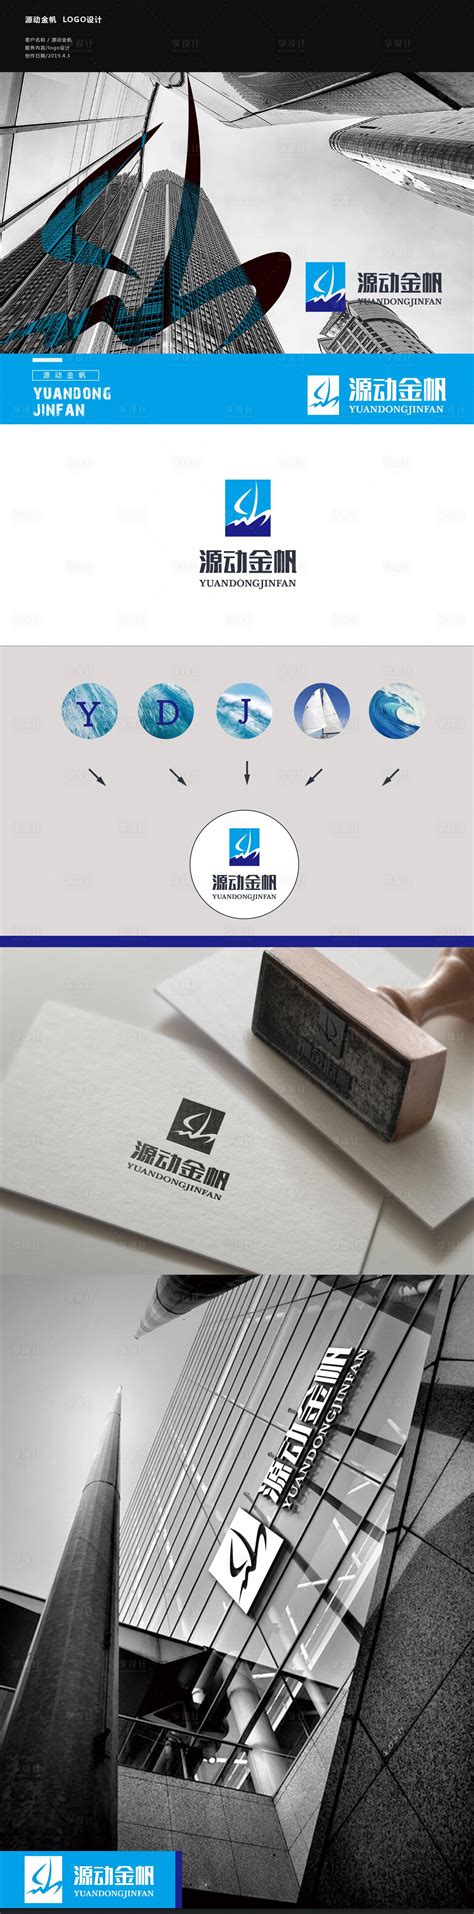 雨飞作品-丝路蓝互联网品牌形象设计